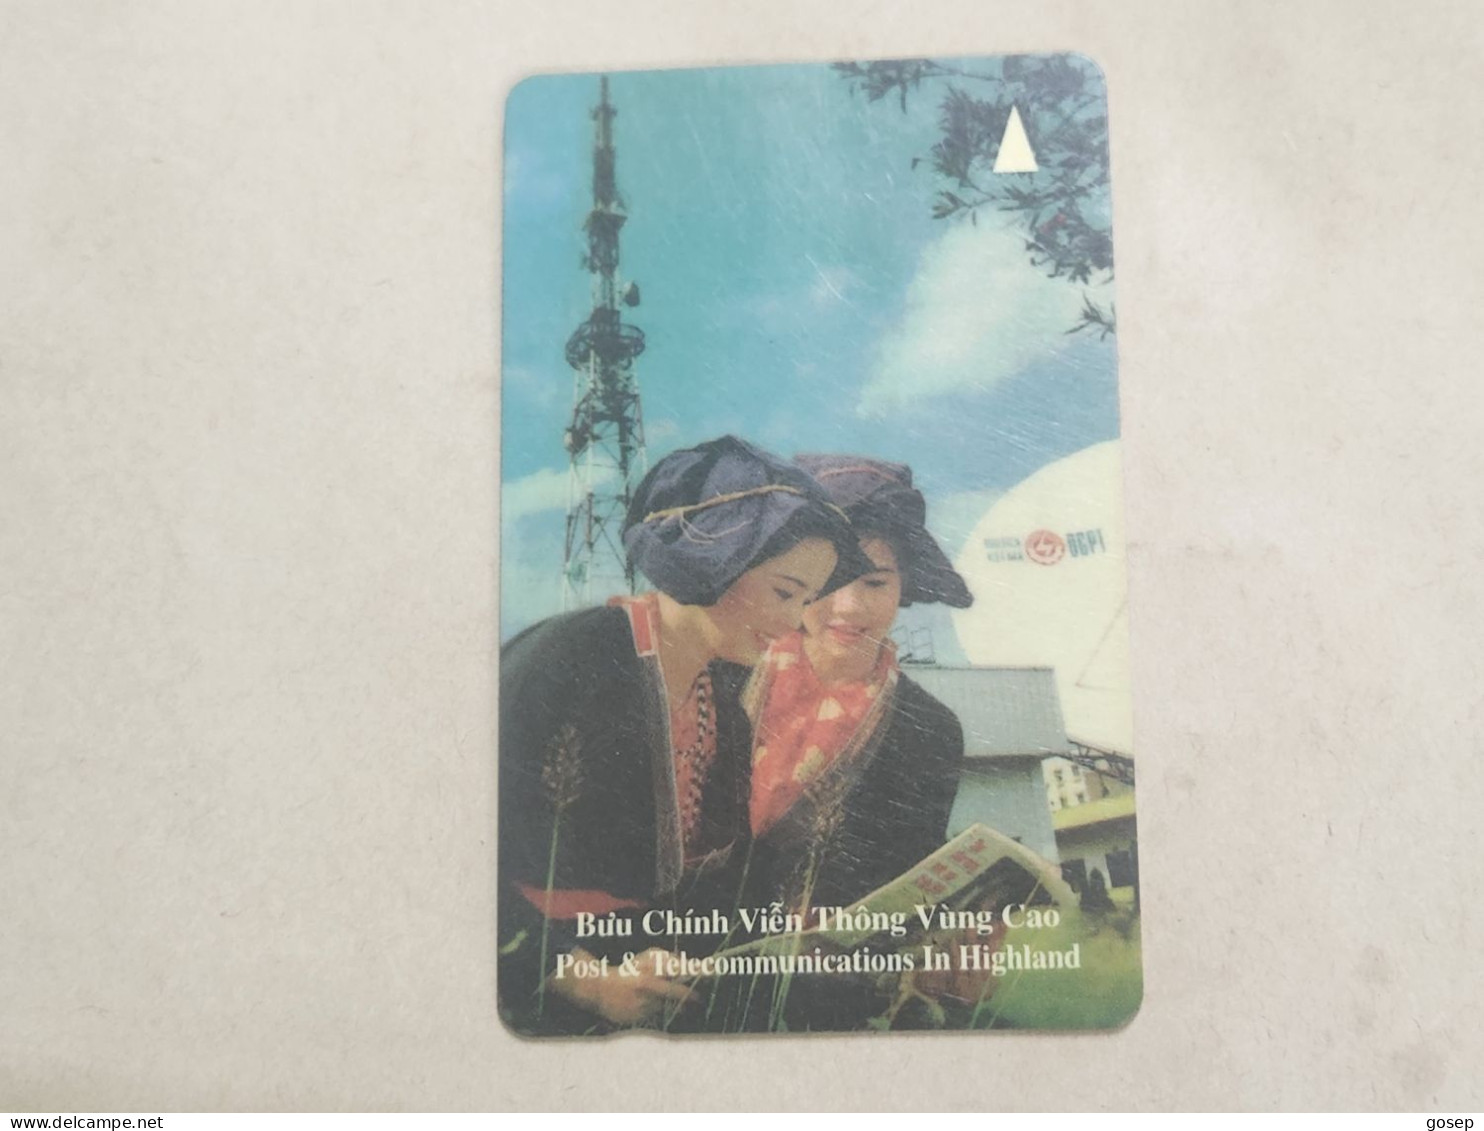 VIETNAM-(1UPVA)-GPT CARD-P&T In Highland-(1)-(1UPVA 018774)(60.000 Vietnamese Dong)-(1996)-used Card+1card Prepiad - Vietnam